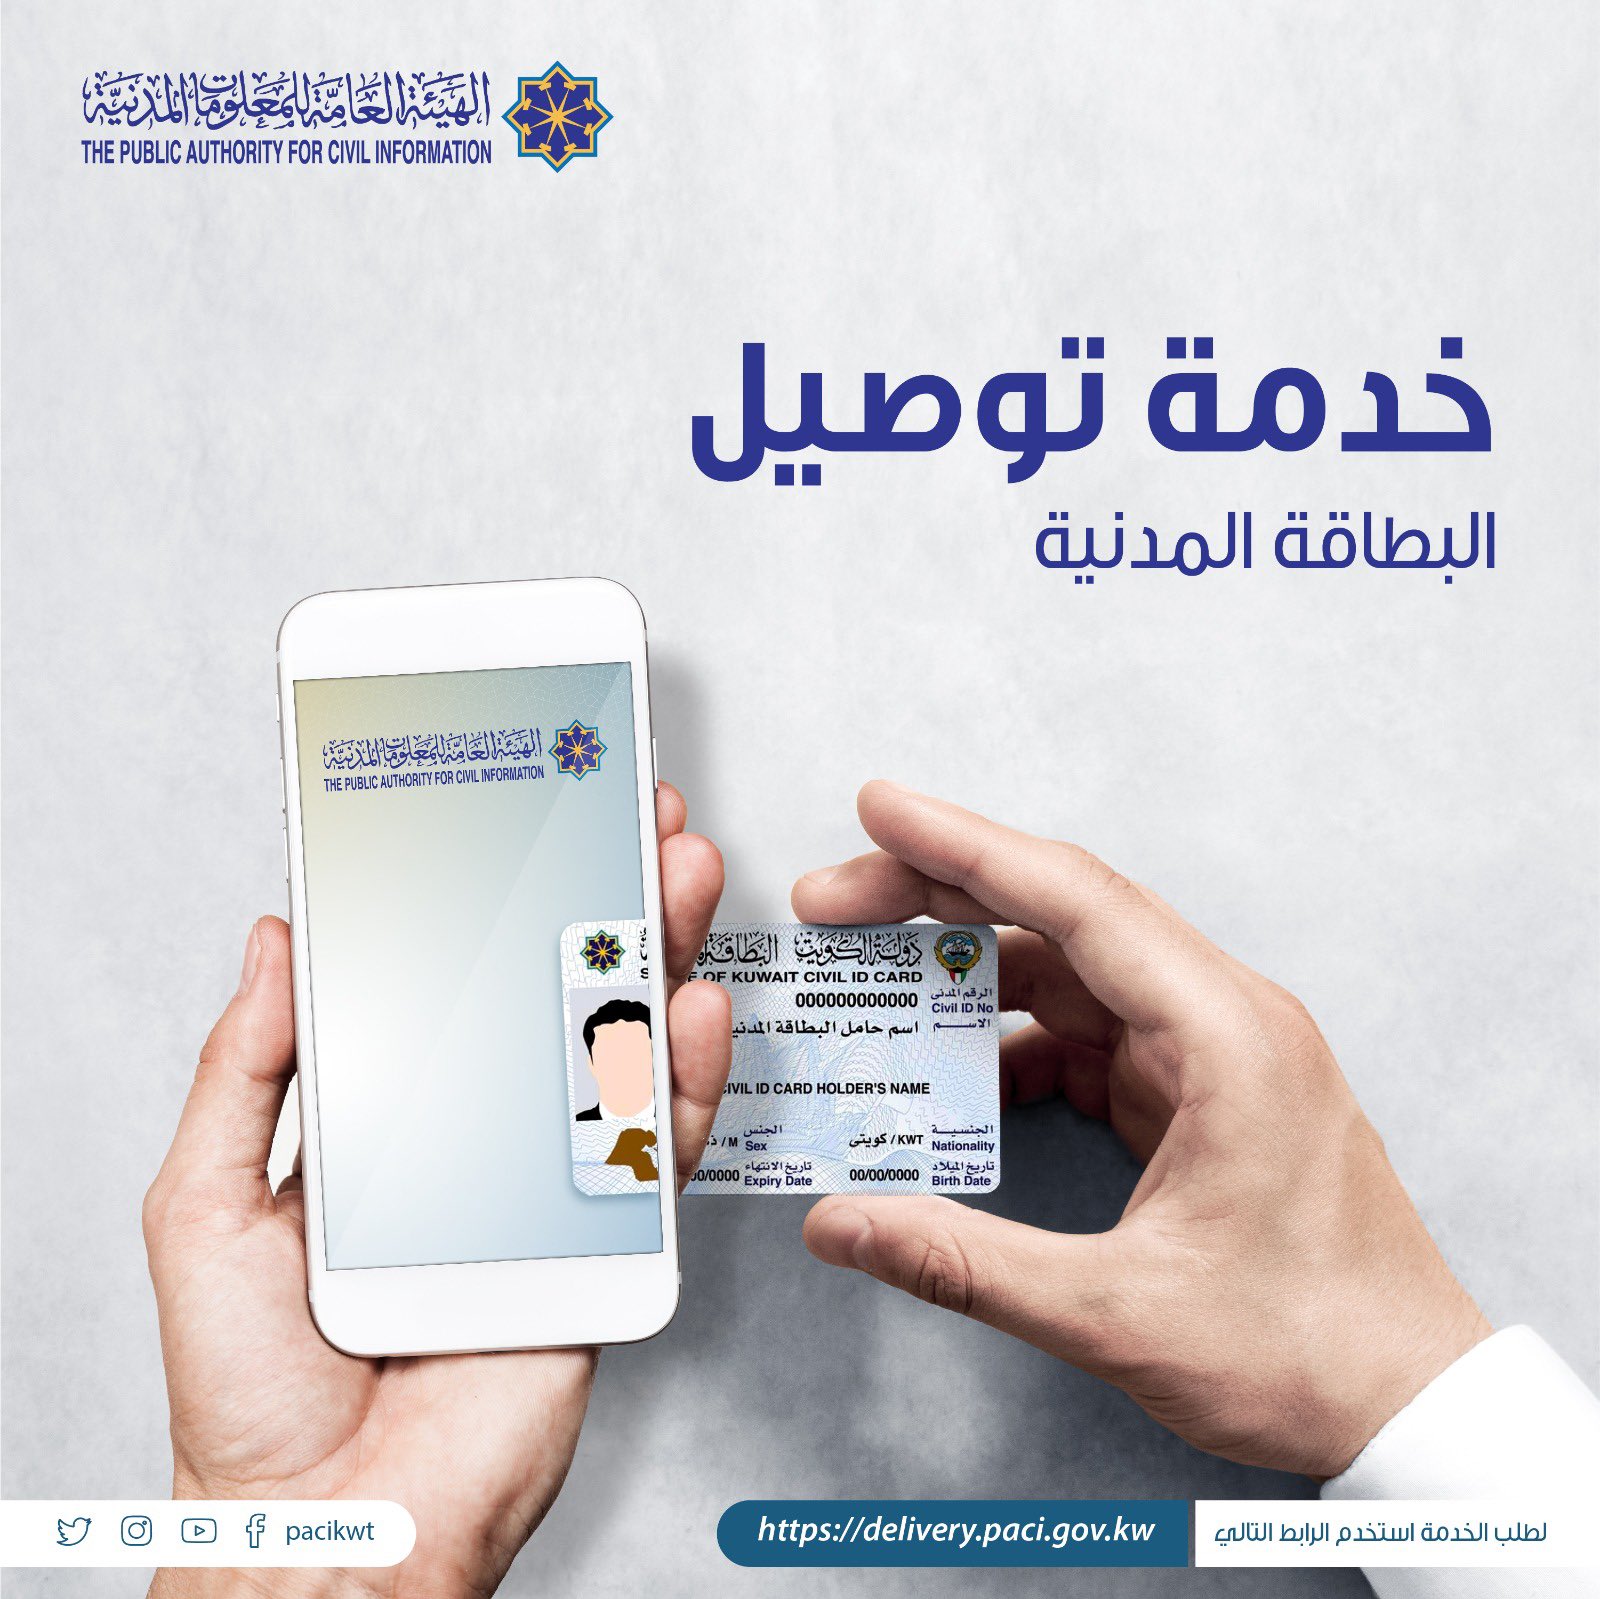 هنا رابط توصيل البطاقة المدنية paci هيئة المعلومات المدنية الكويت 2